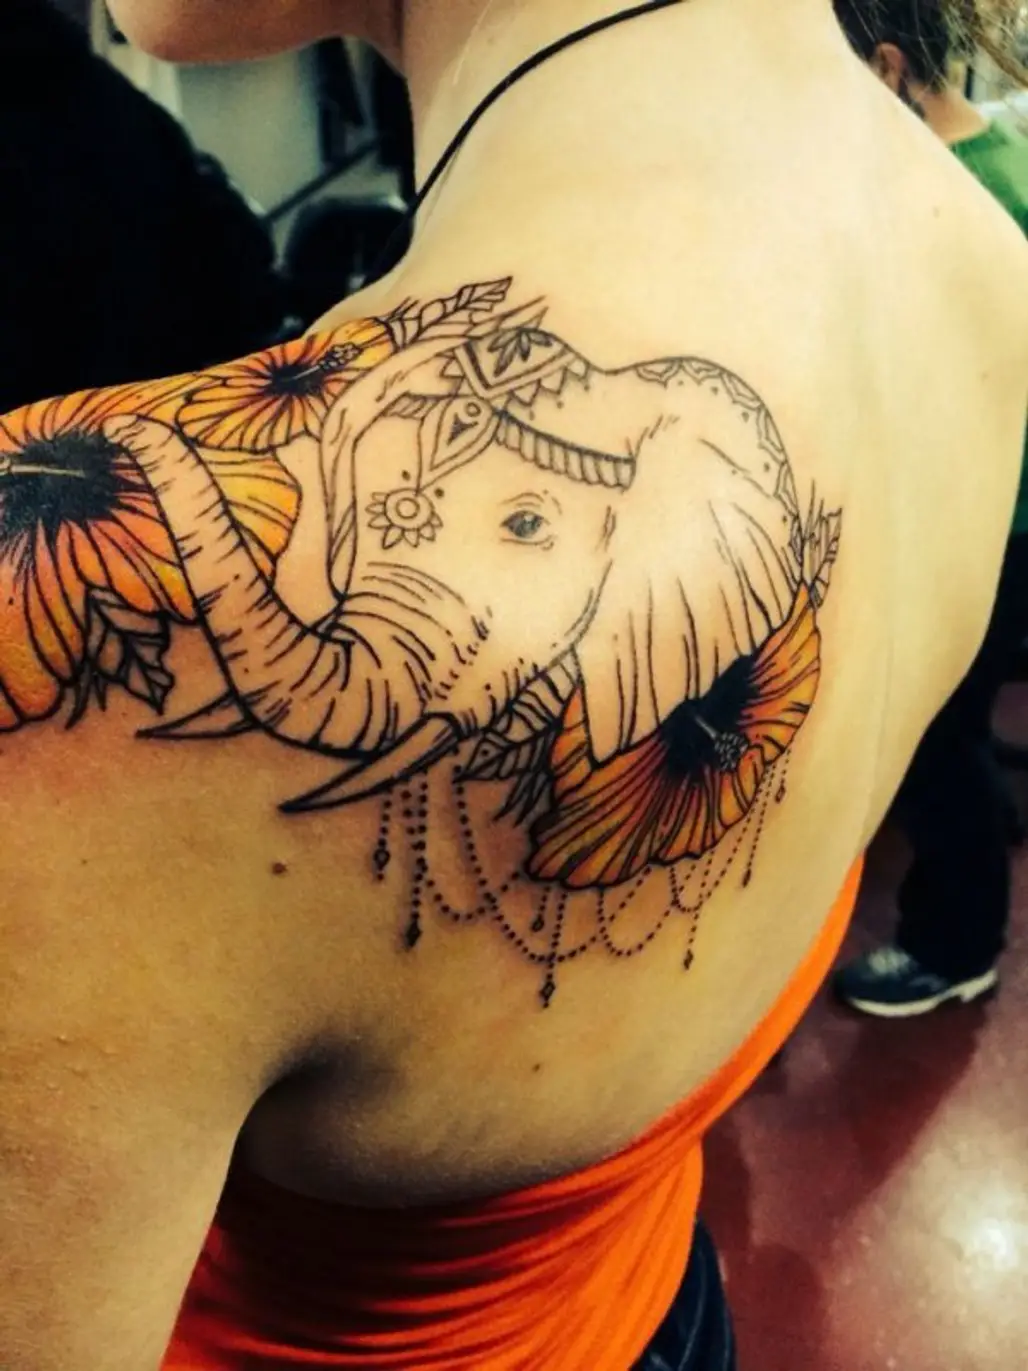 tattoo,arm,tattoo artist,human body,trunk,